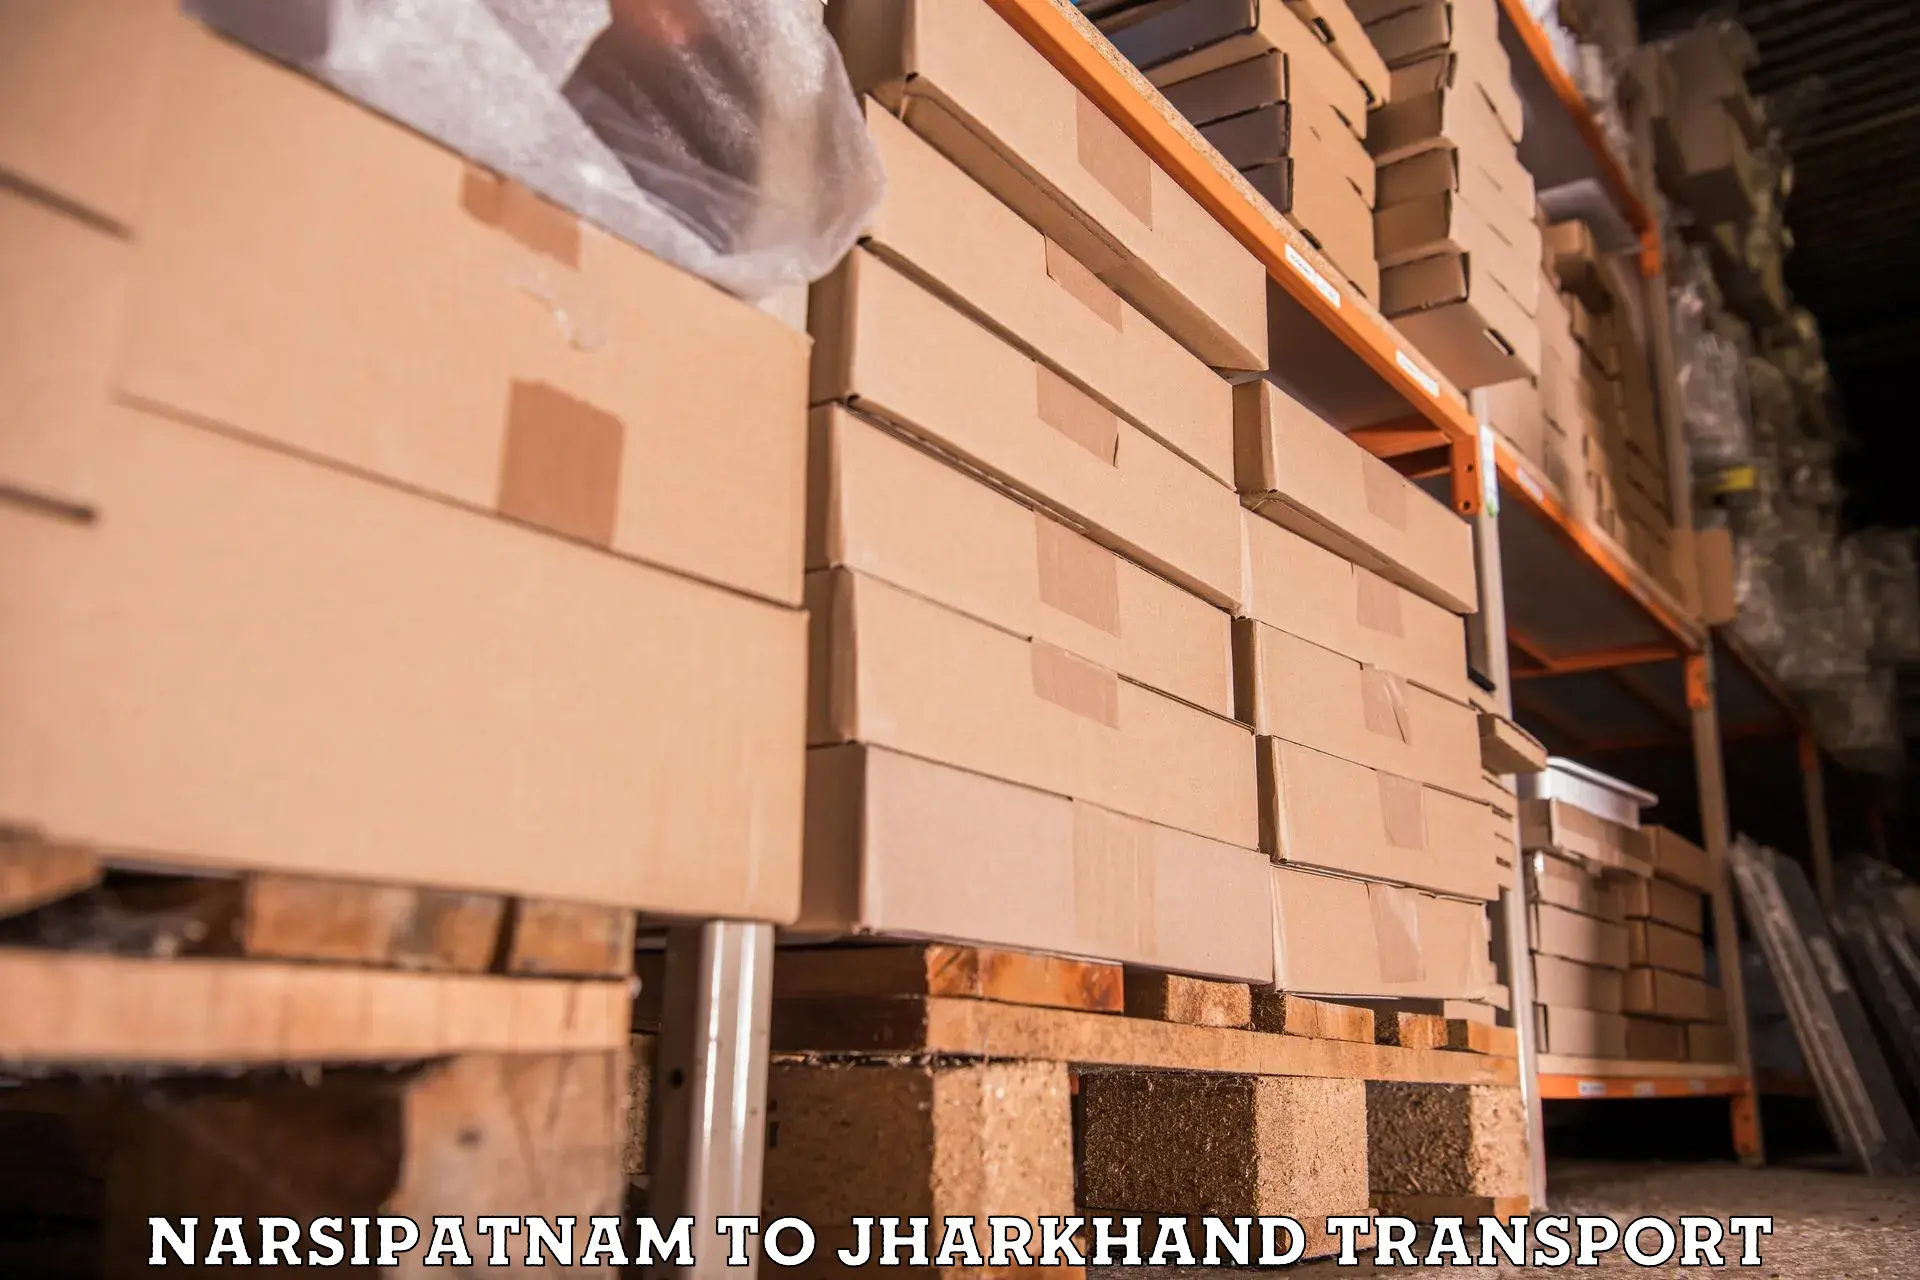 International cargo transportation services Narsipatnam to Nagar Untari